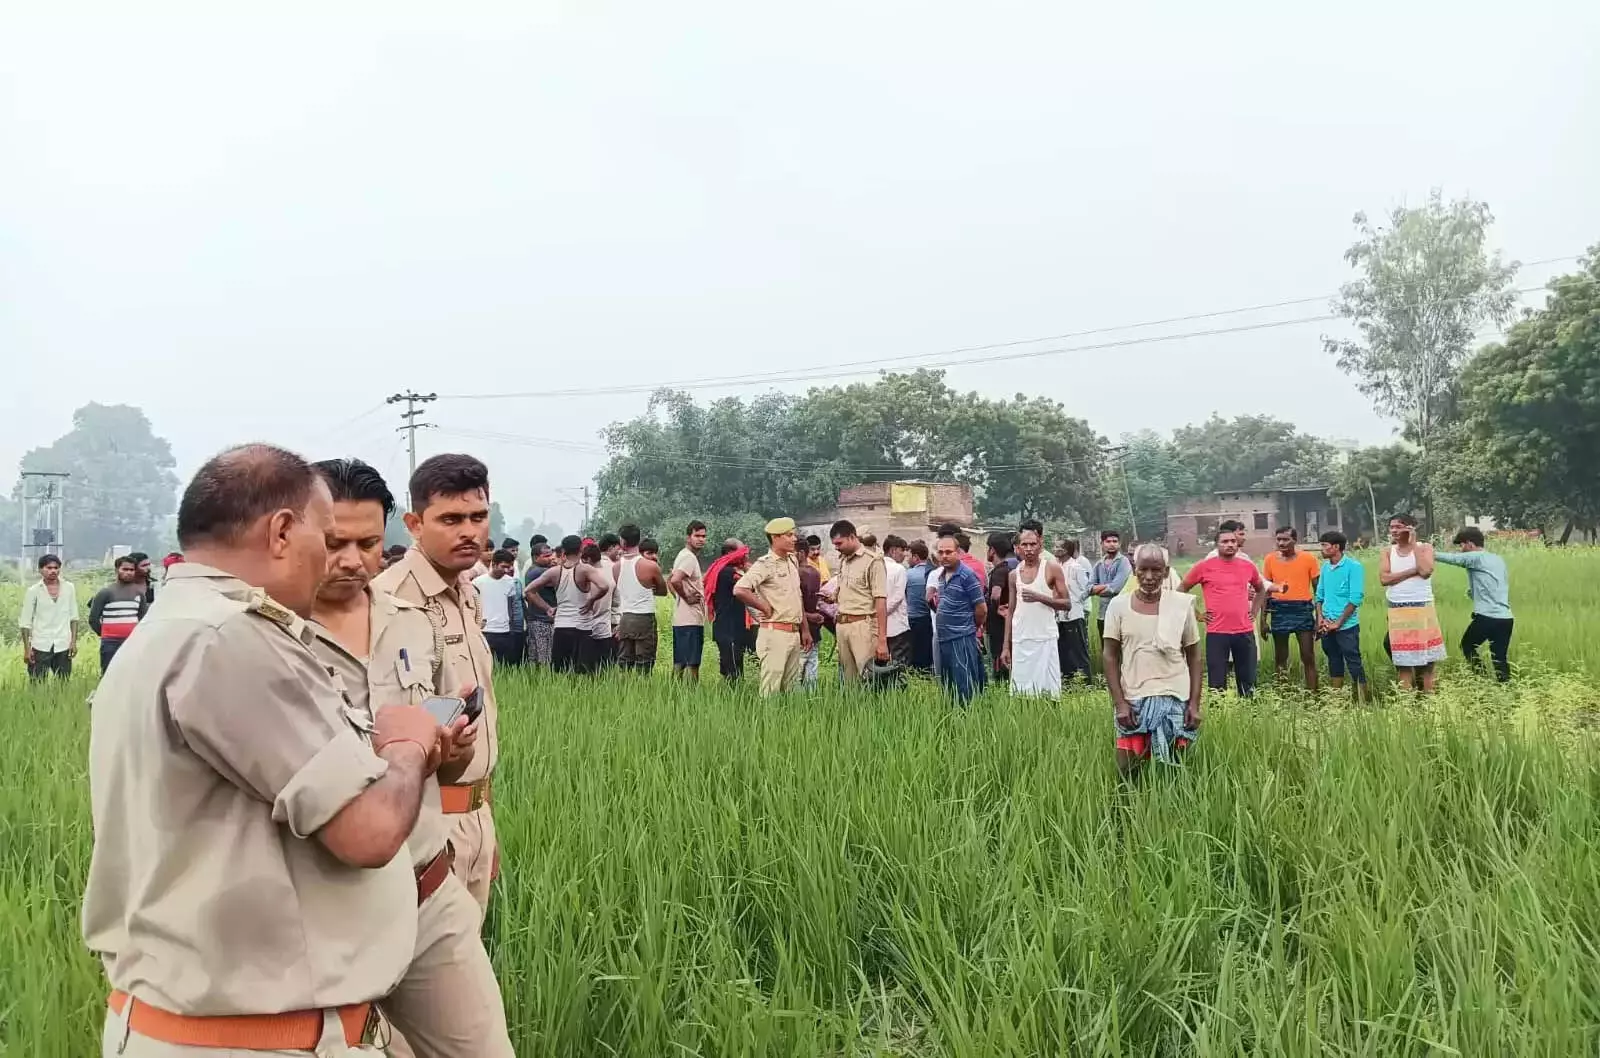 वाराणसी : घर से लापता युवक की खेत में मिली लाश, जांच में जुटी पुलिस